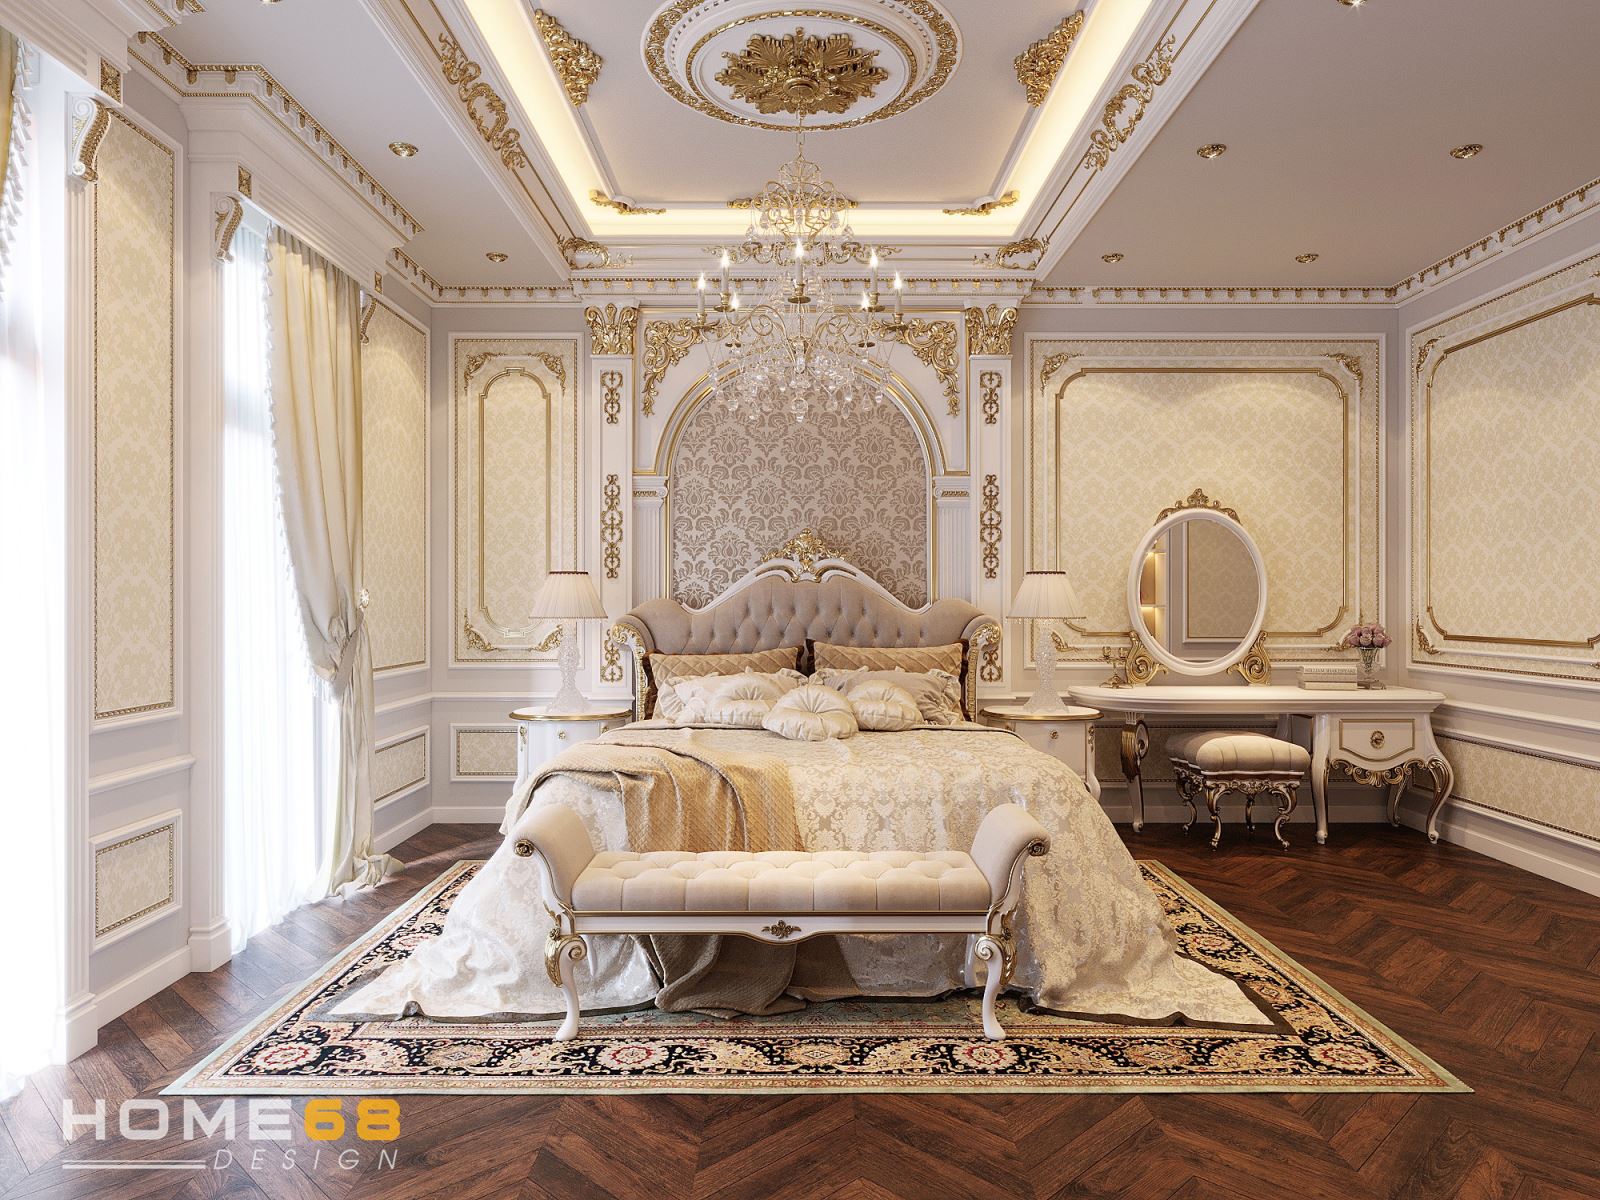 Mẫu thiết kế phòng ngủ cổ điển- dự án HOME68